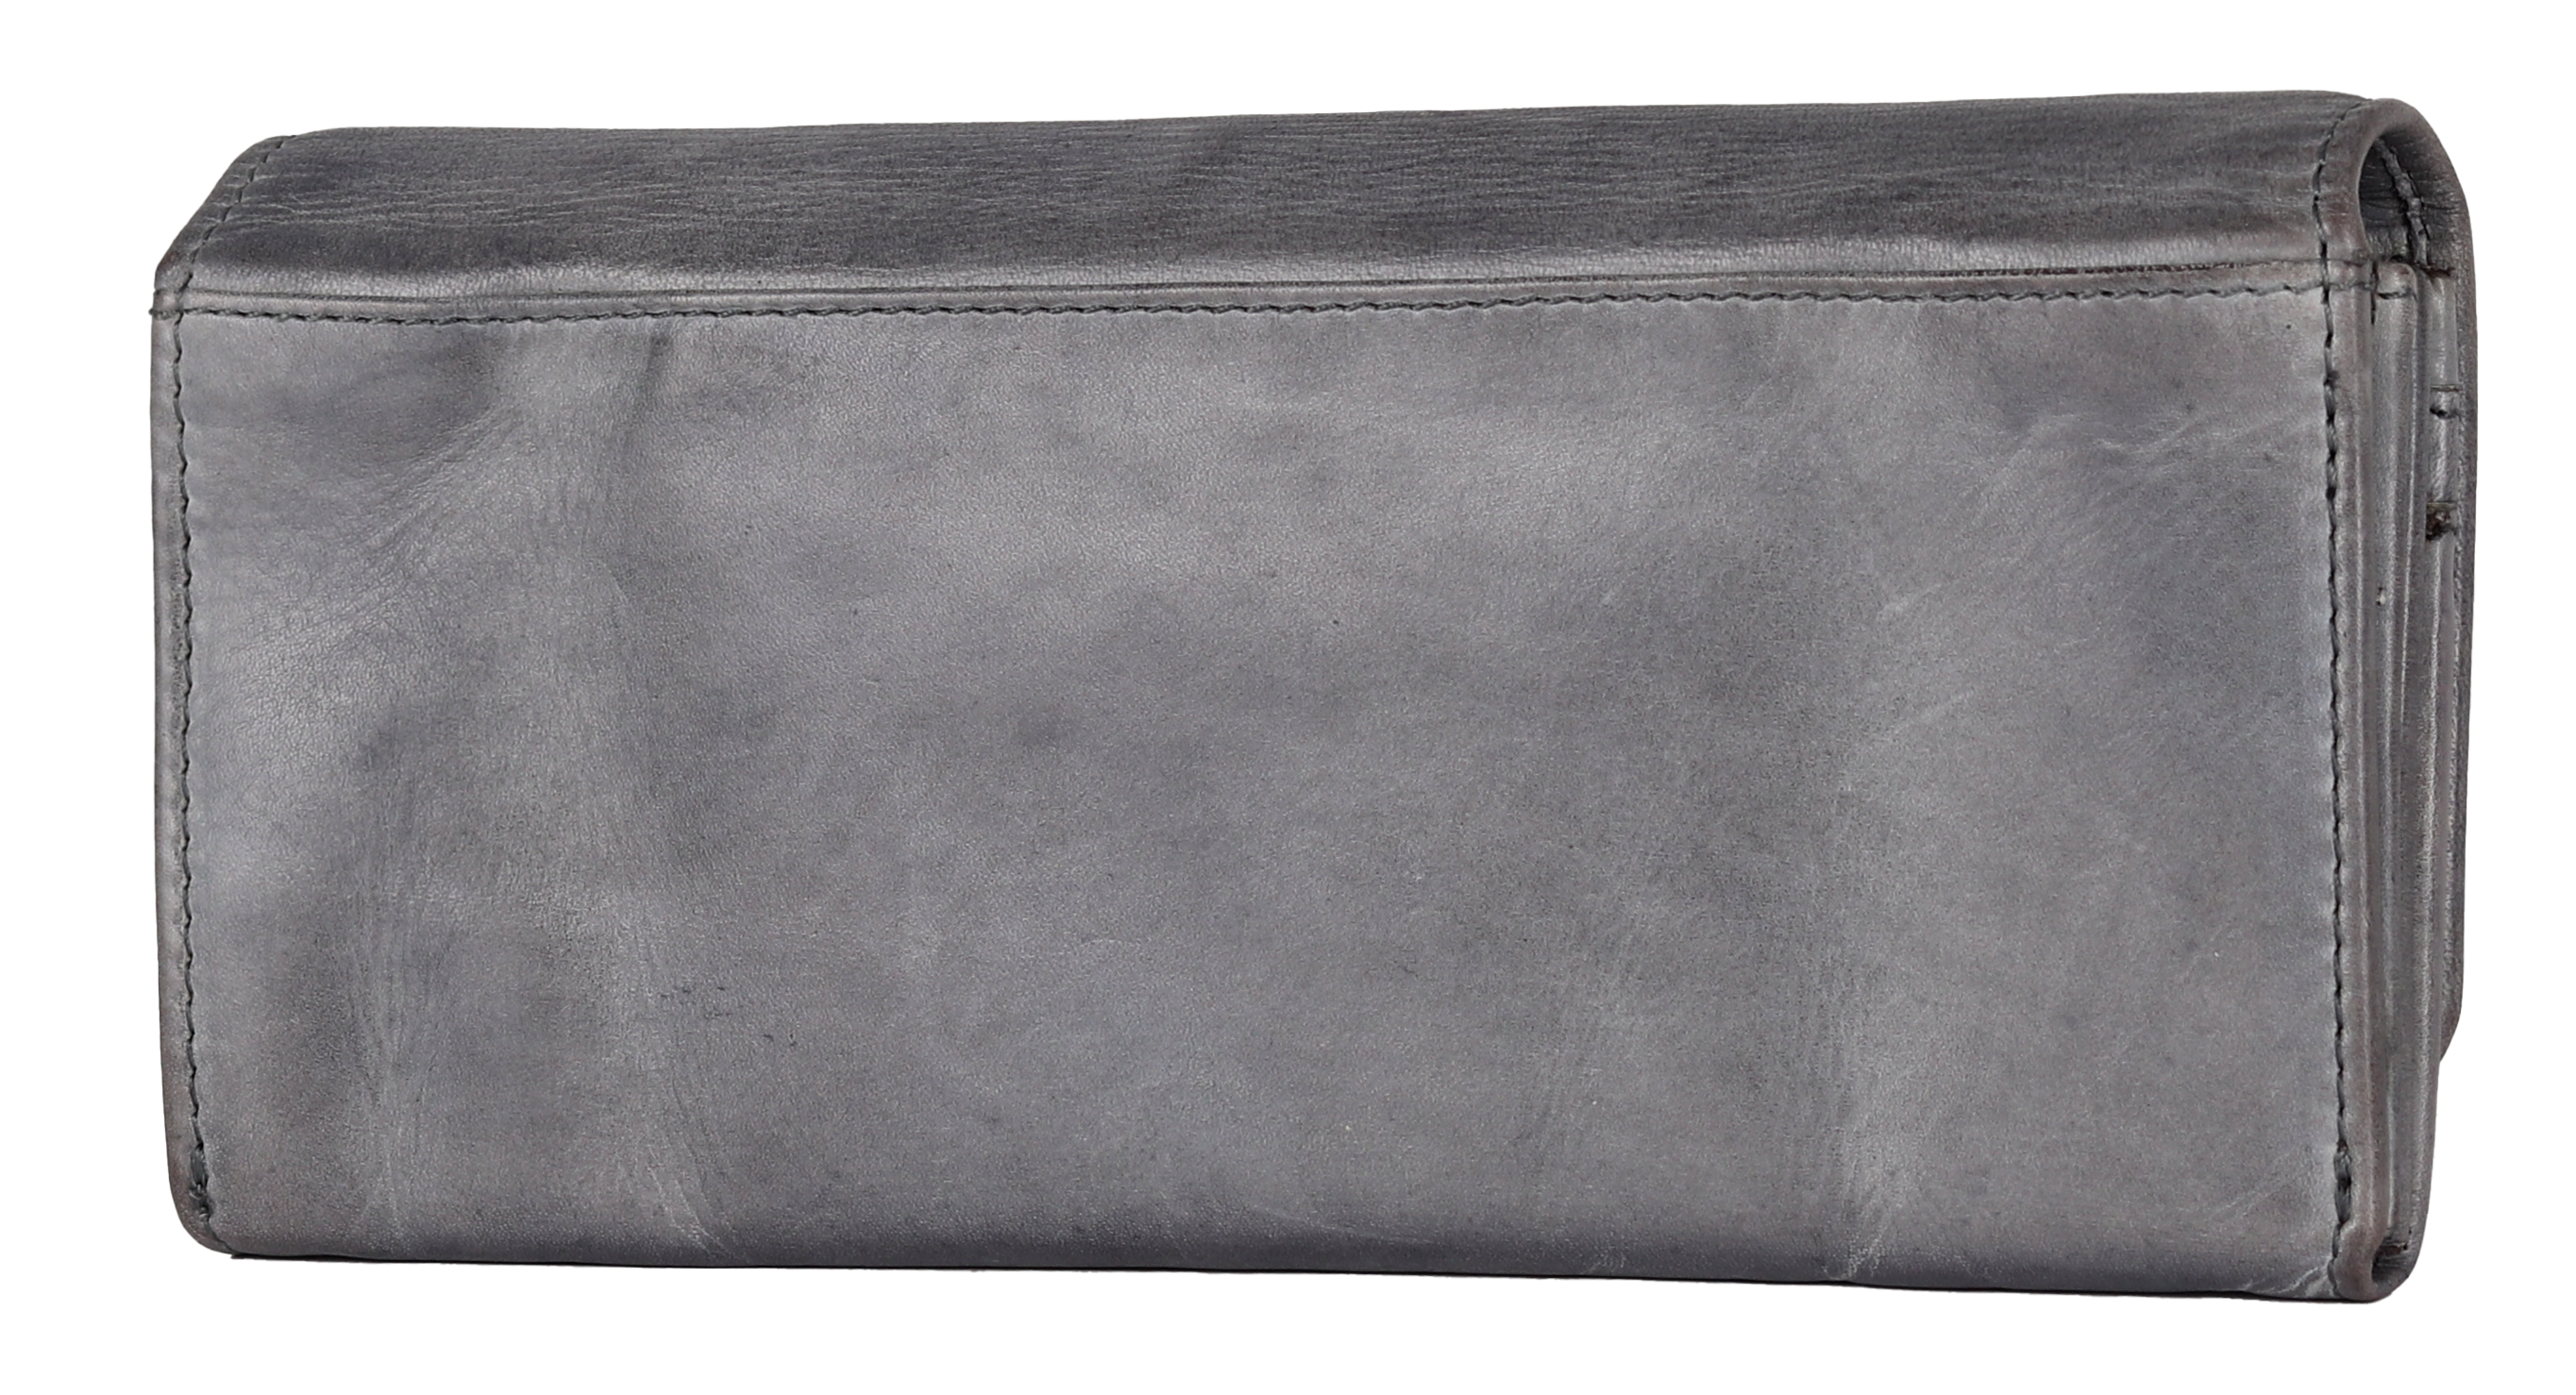 BOL Women's Leather Clutch Wallet